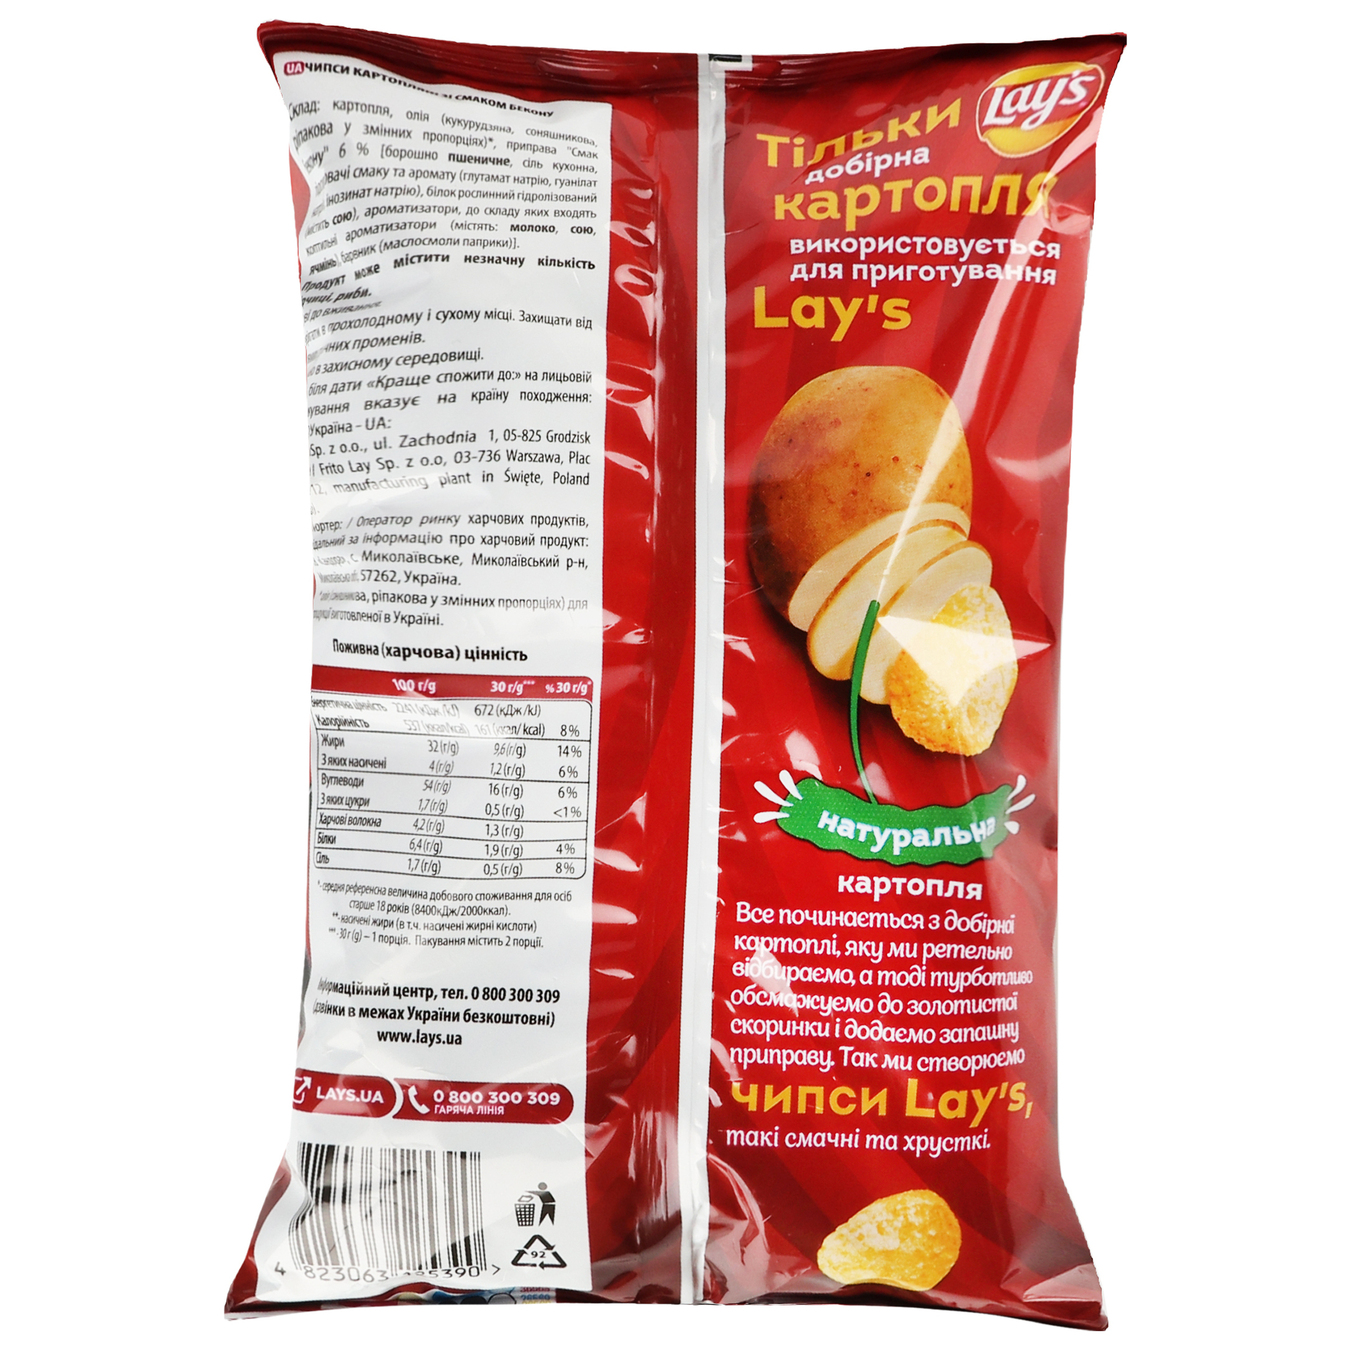 Potato chips Lay's bacon flavor 60g 2